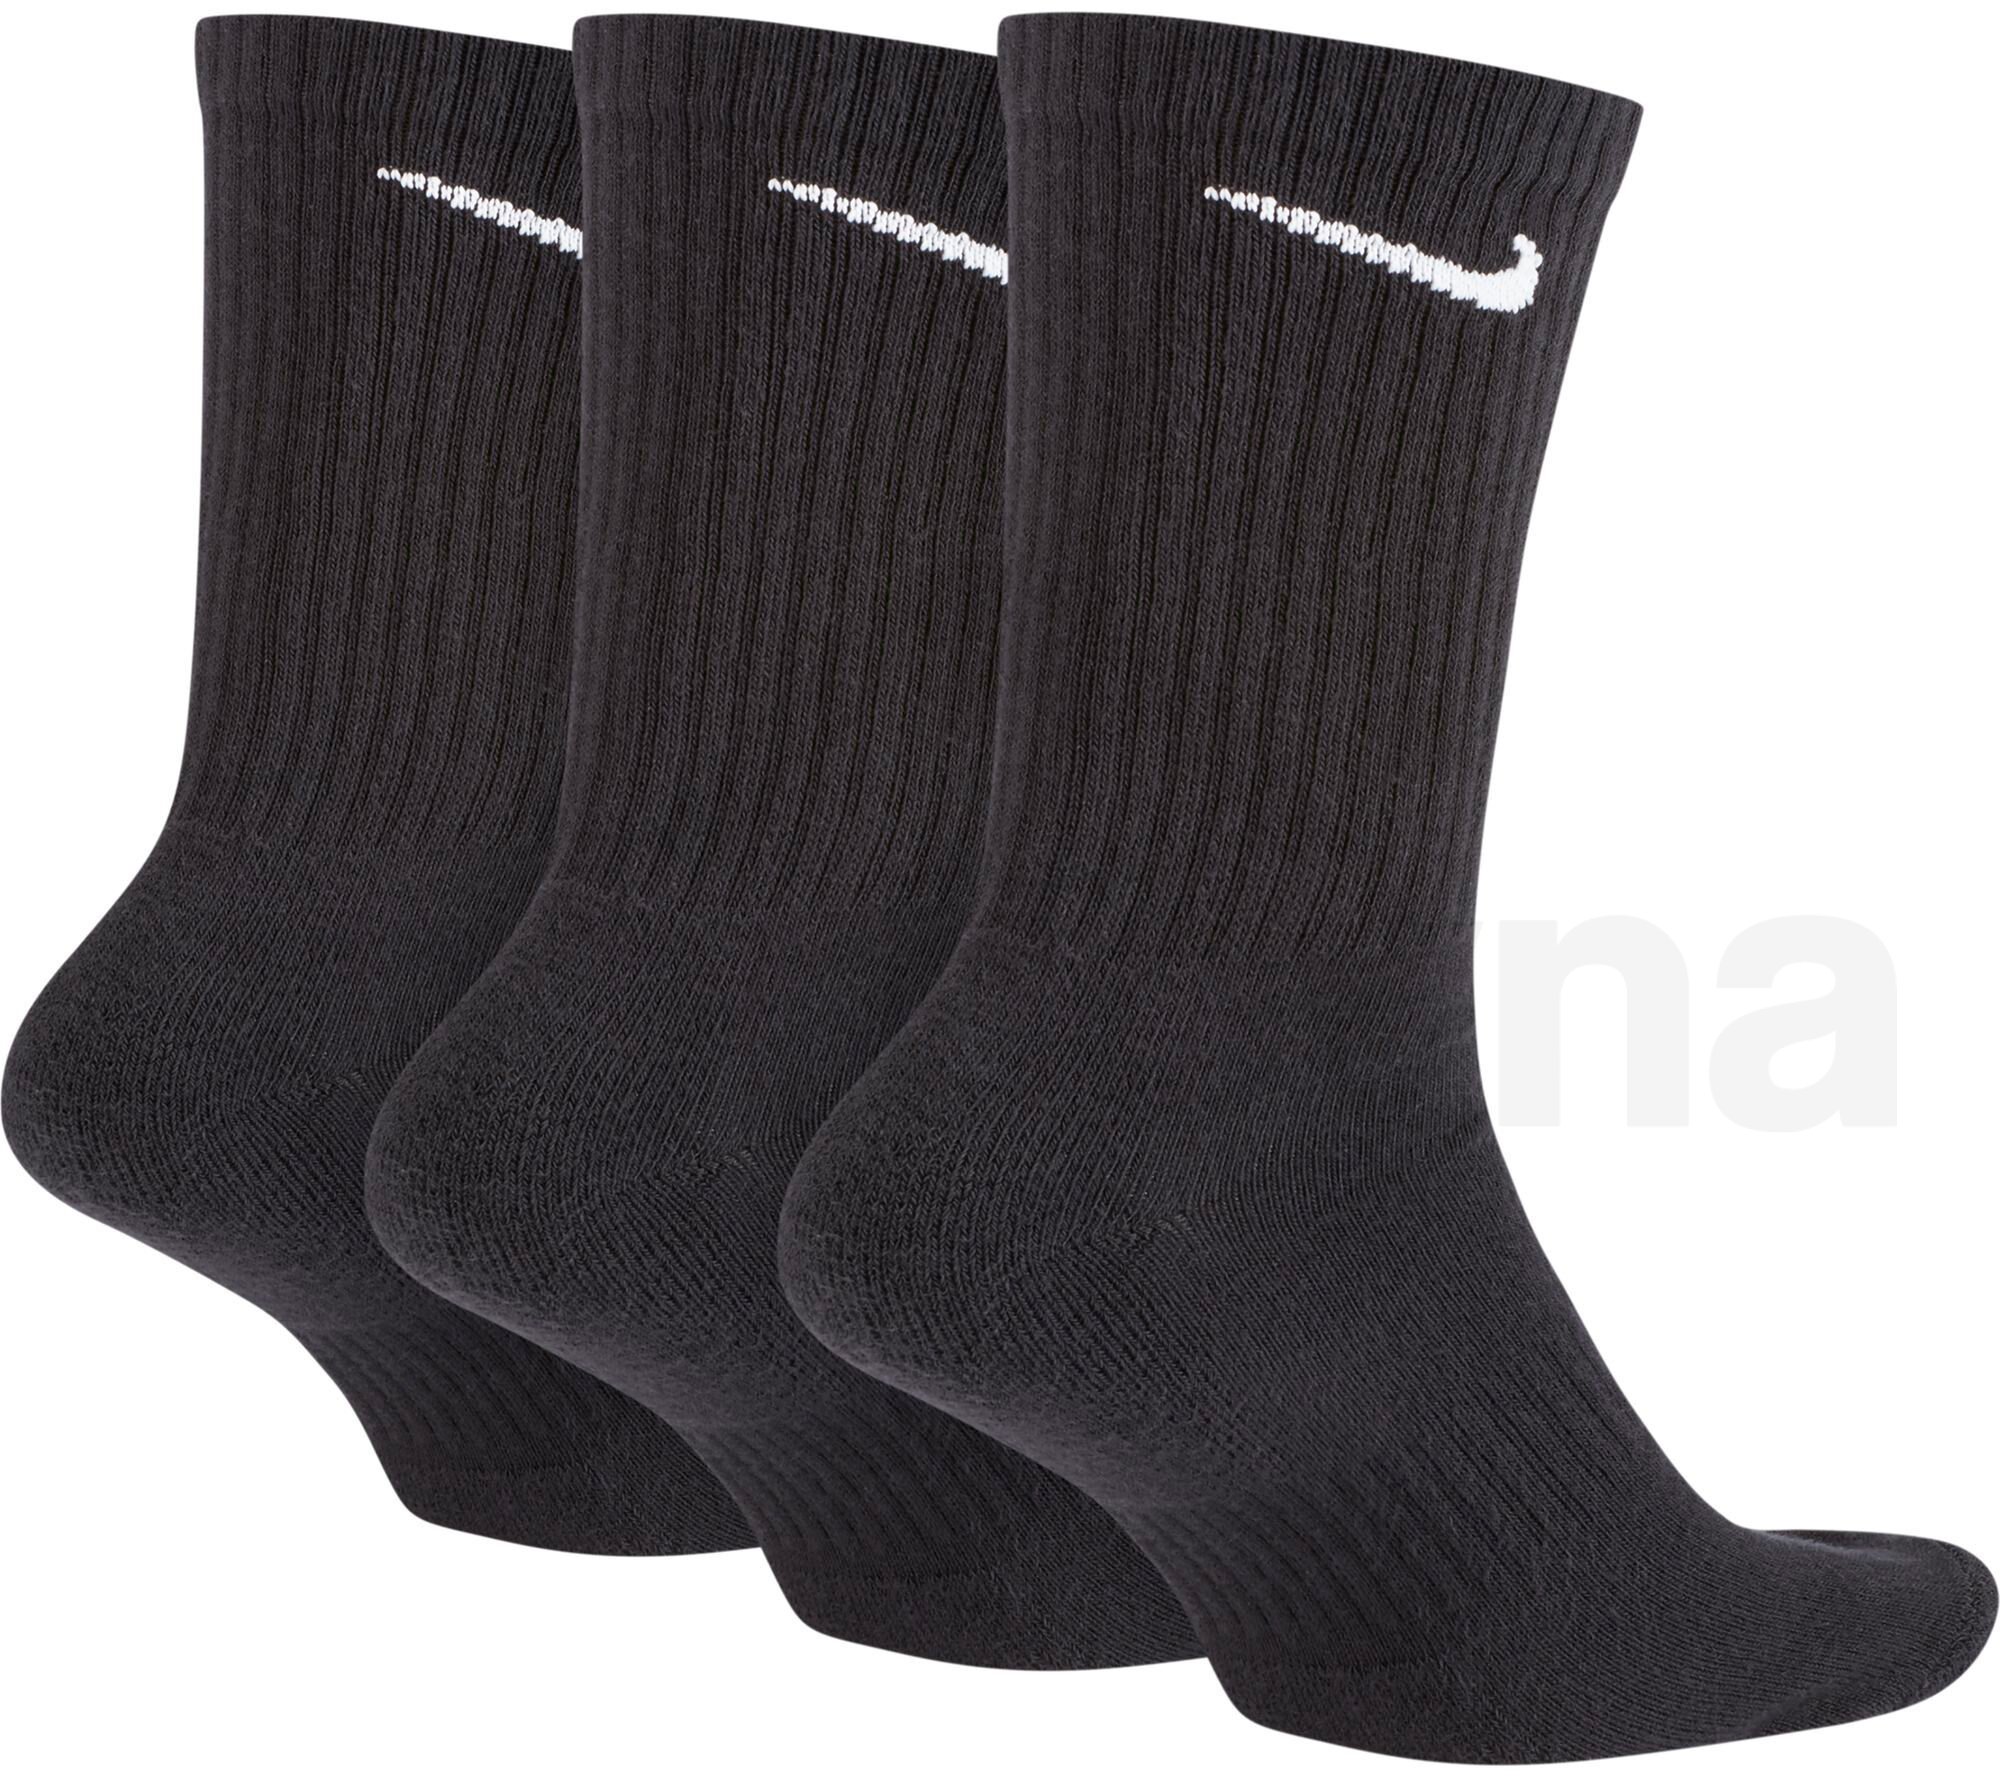 Ponožky Nike Everyday Cush Crew 3 Pack - černá